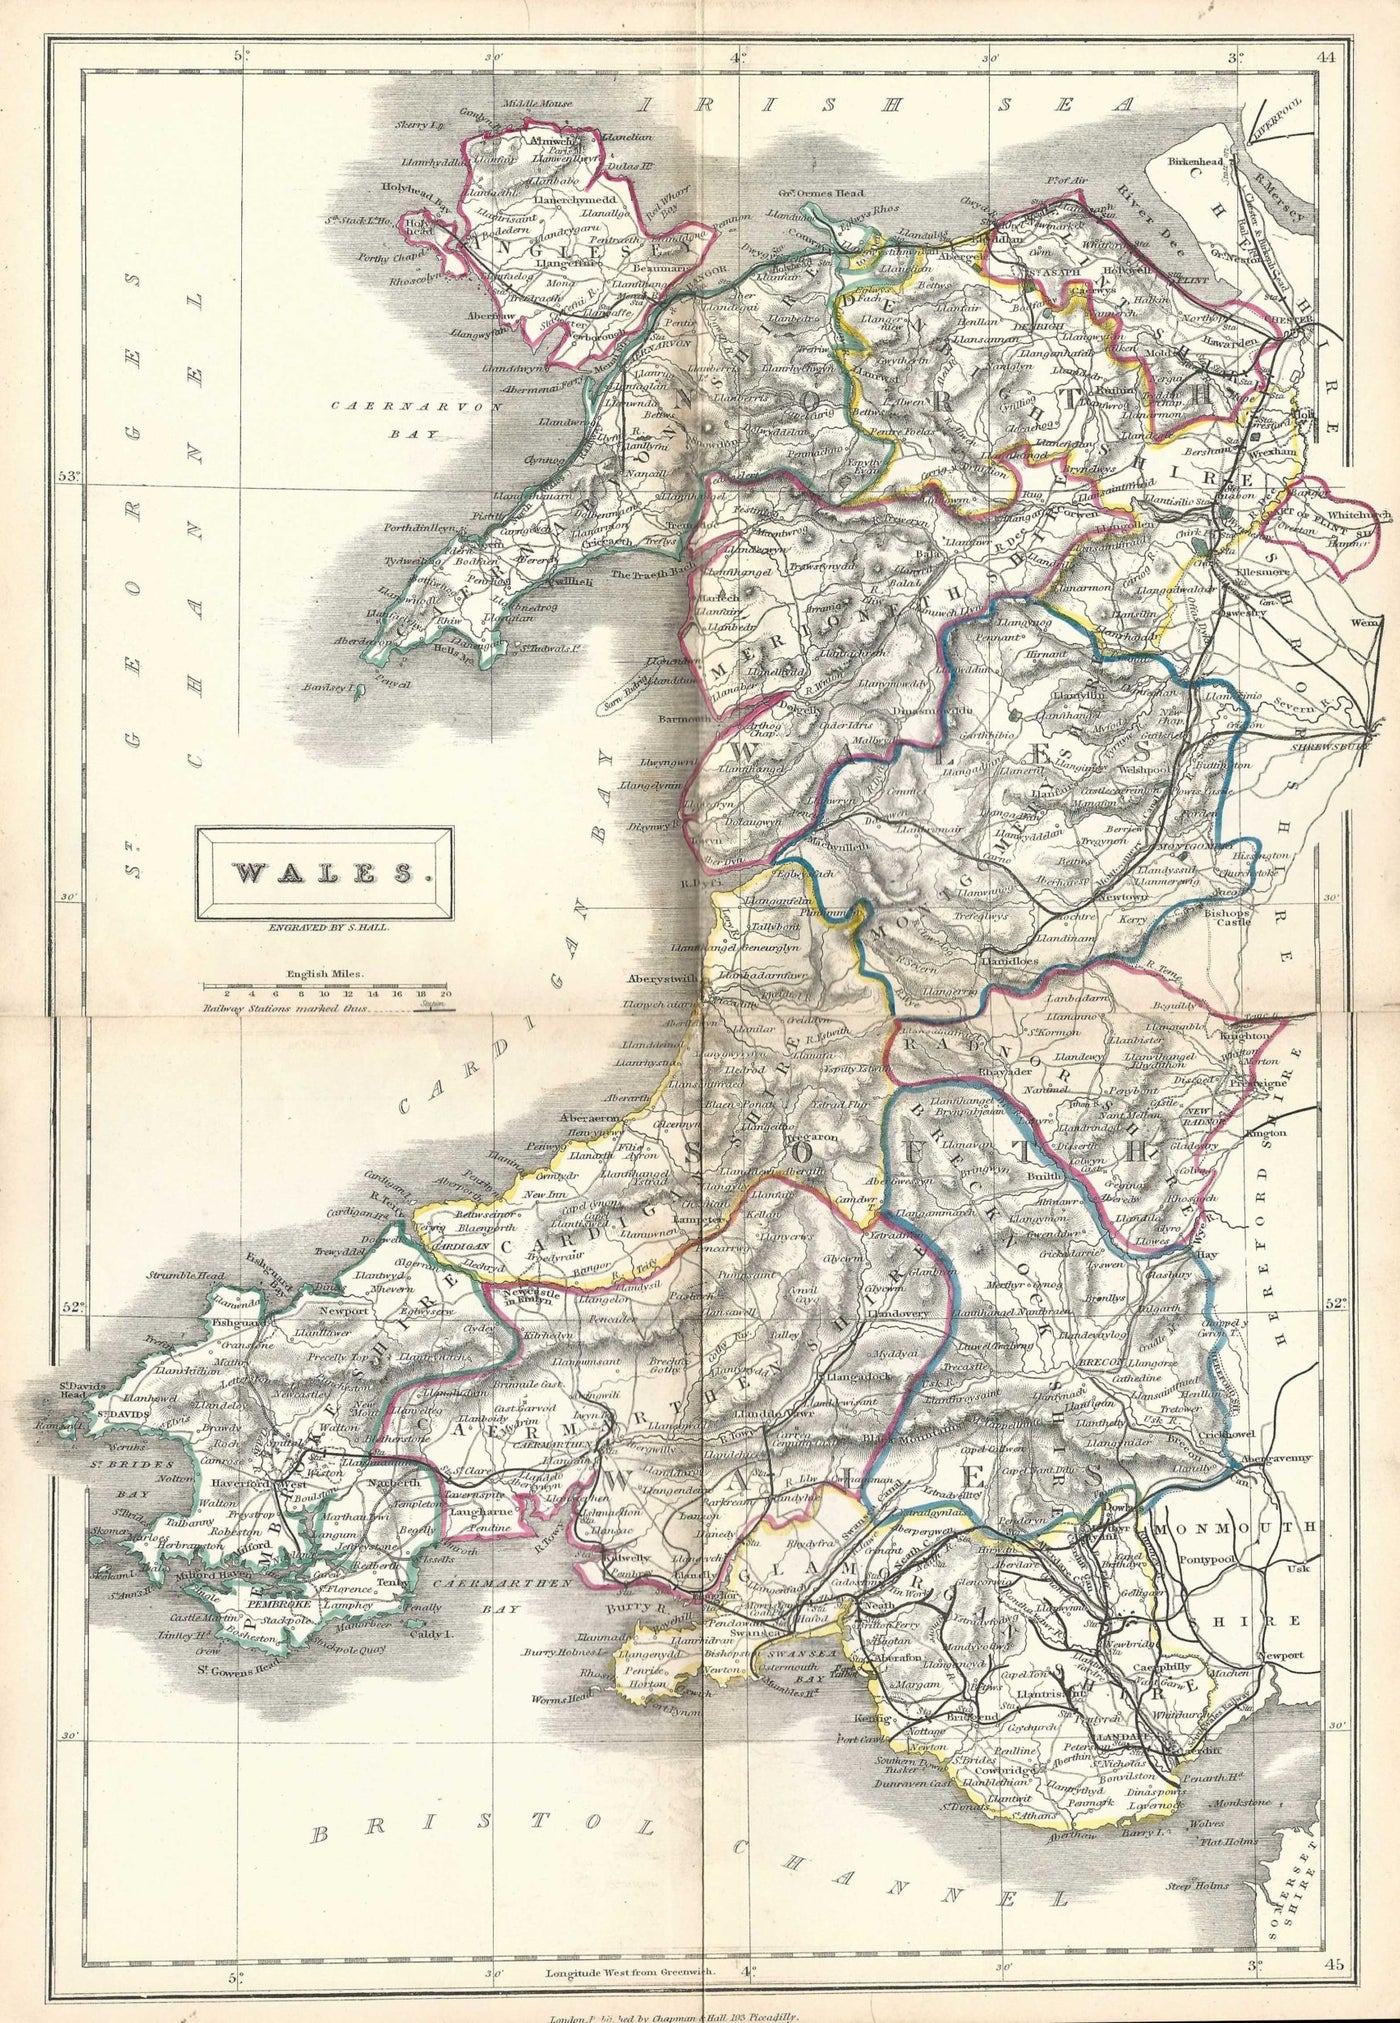 Wales antique map (Cymru) by Sidney Hall published 1860